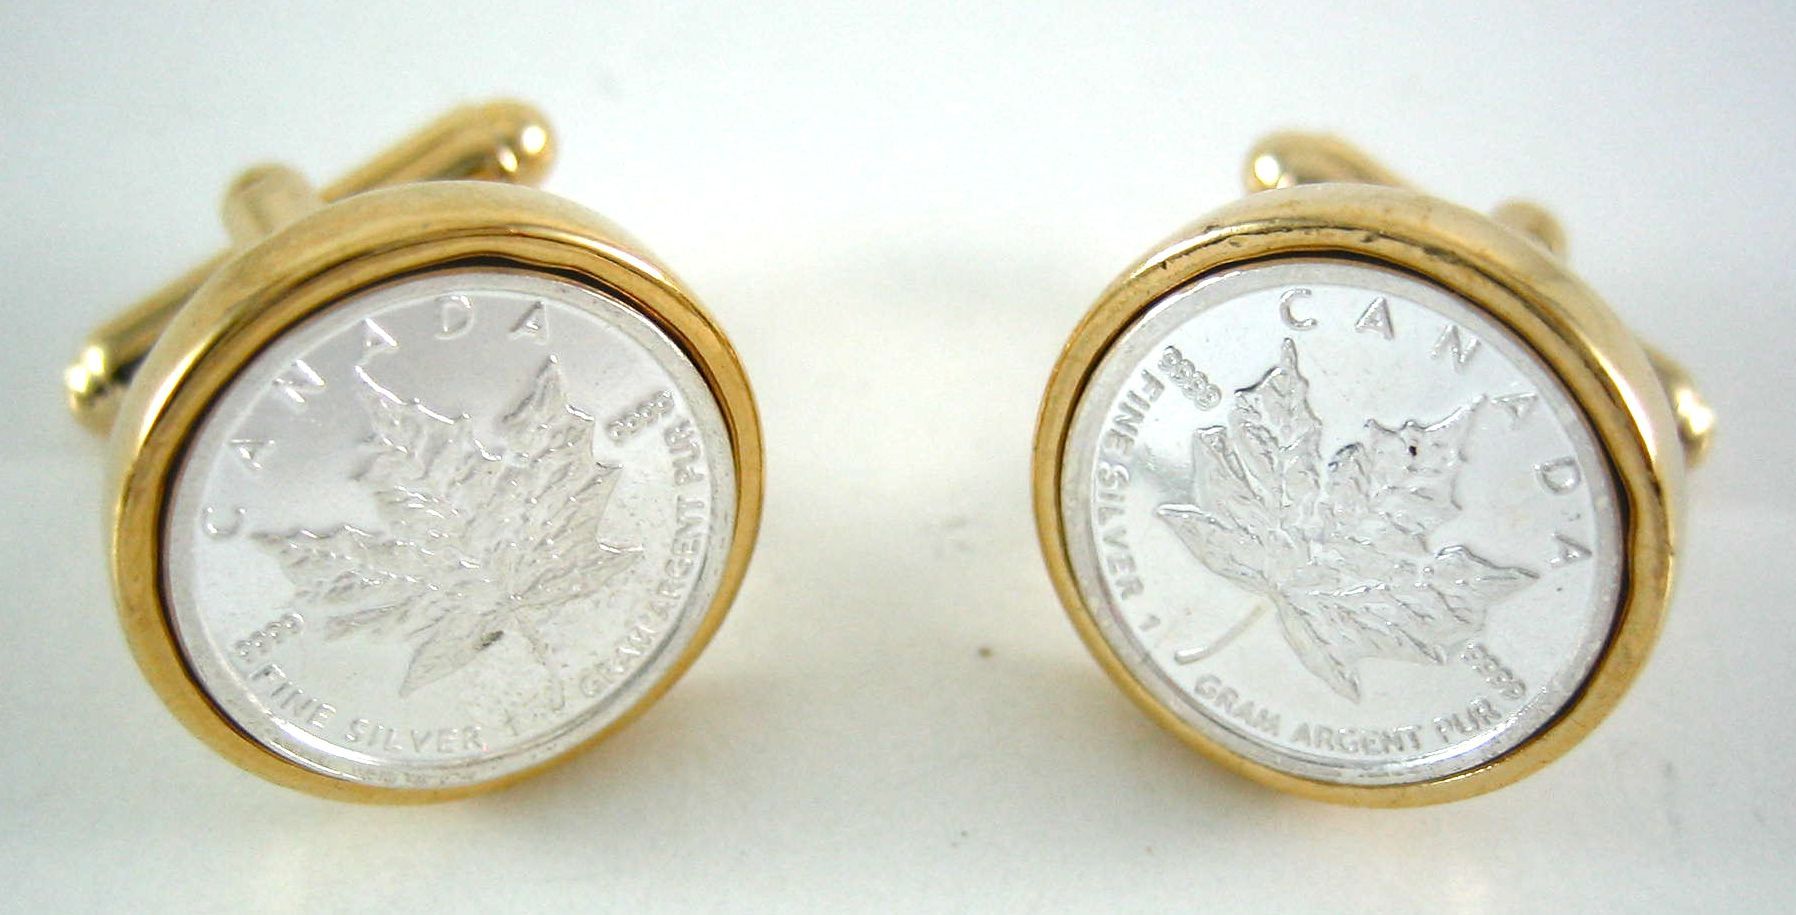 Silver Enamel Canada Canadian Maple Leaf Coin Cufflinks